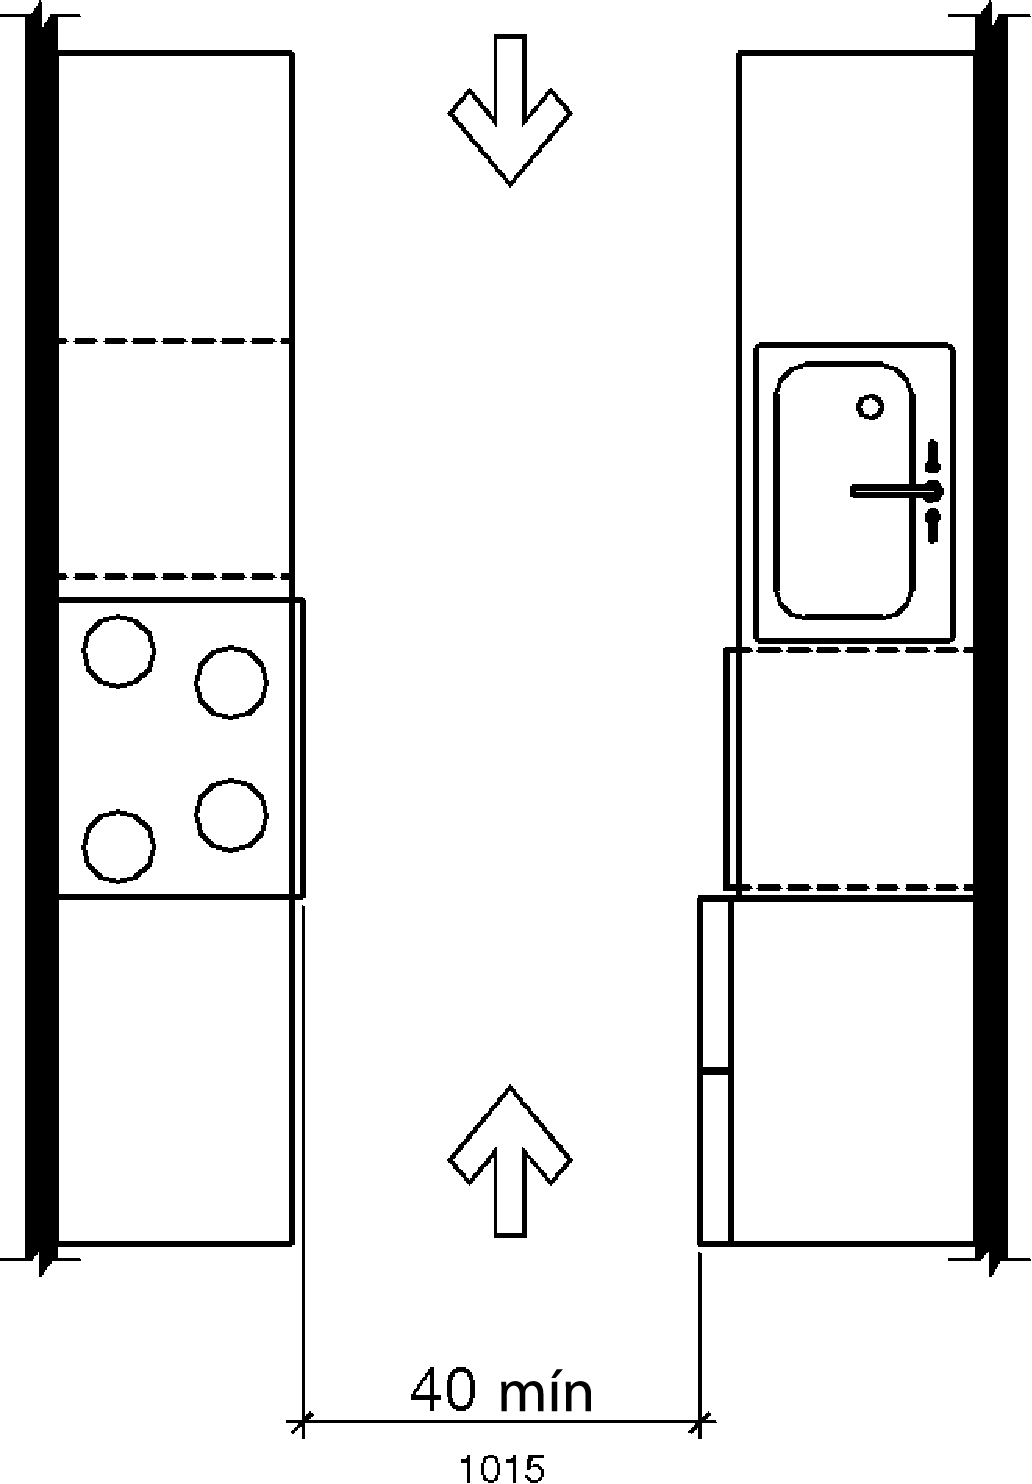 Una vista en planta de una cocina con electrodomésticos y gabinetes a ambos lados de un pasillo abierto en ambos extremos muestra el ancho del pasillo central como mínimo 40 pulgadas (1015 mm)